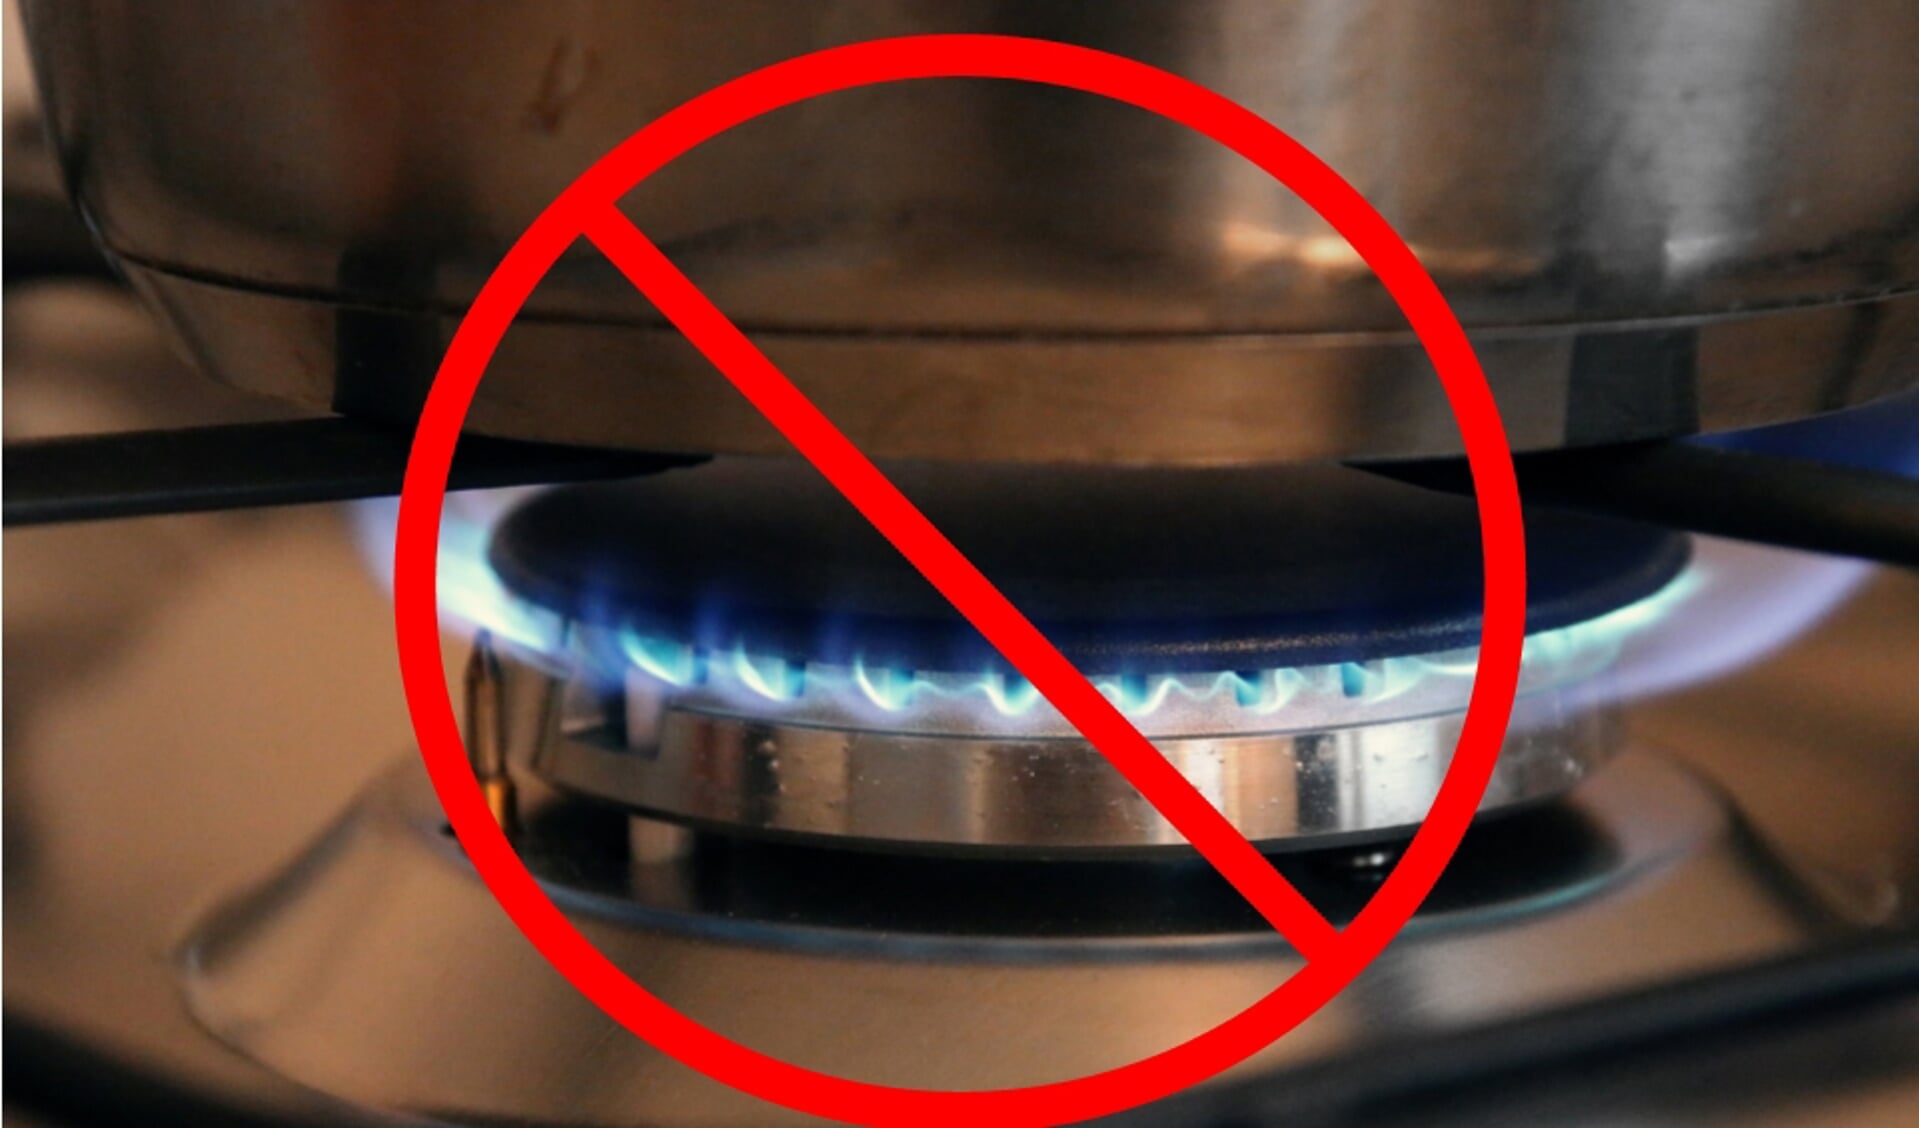 Koken en ons huis verwarmen op gas moet in 2050 verleden tijd zijn.